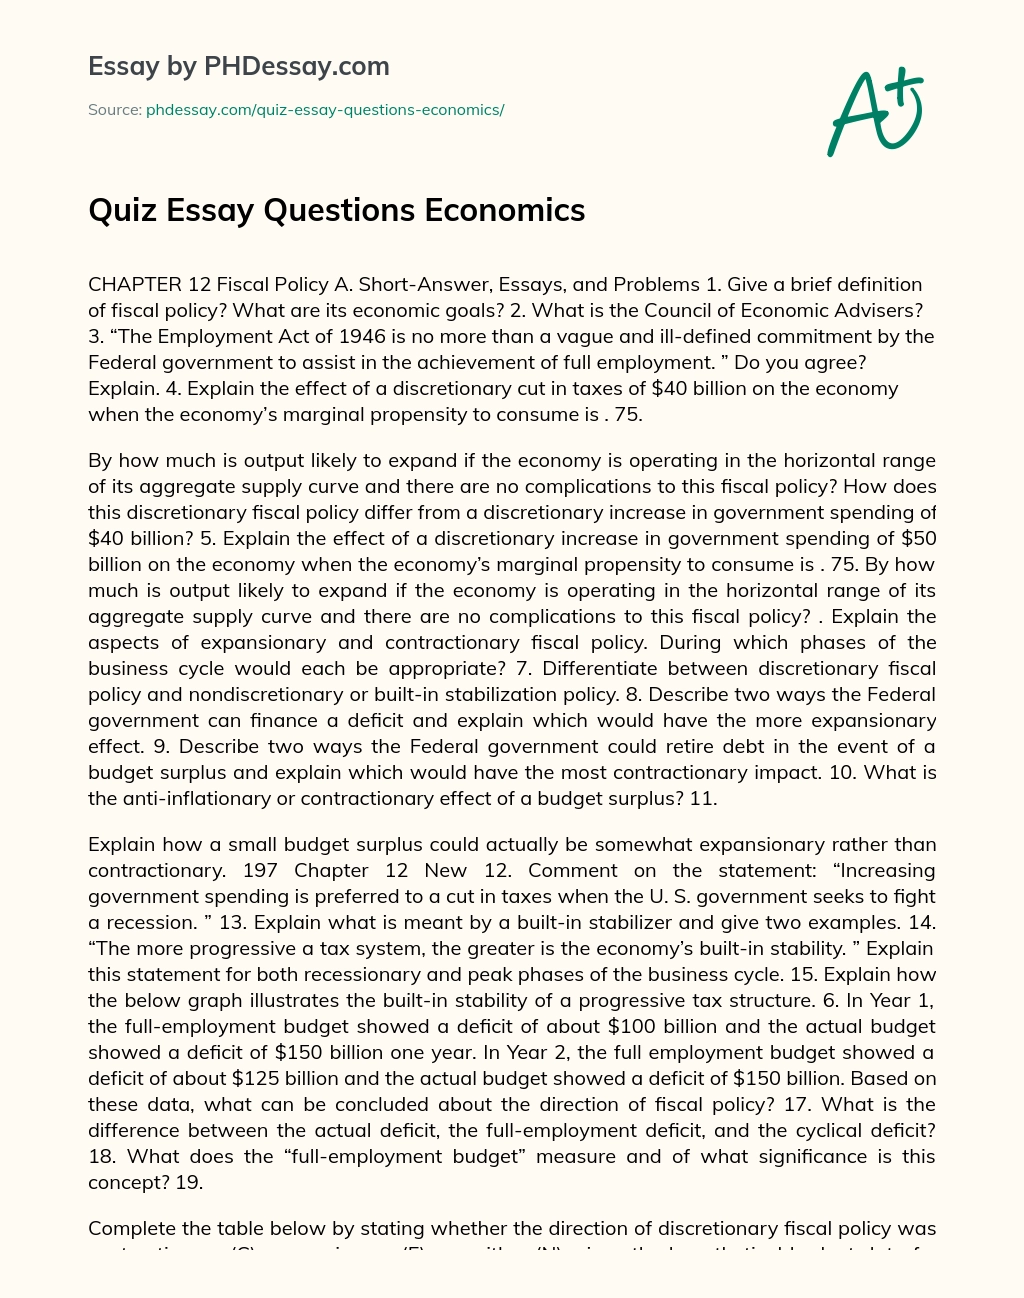 Quiz Essay Questions Economics essay